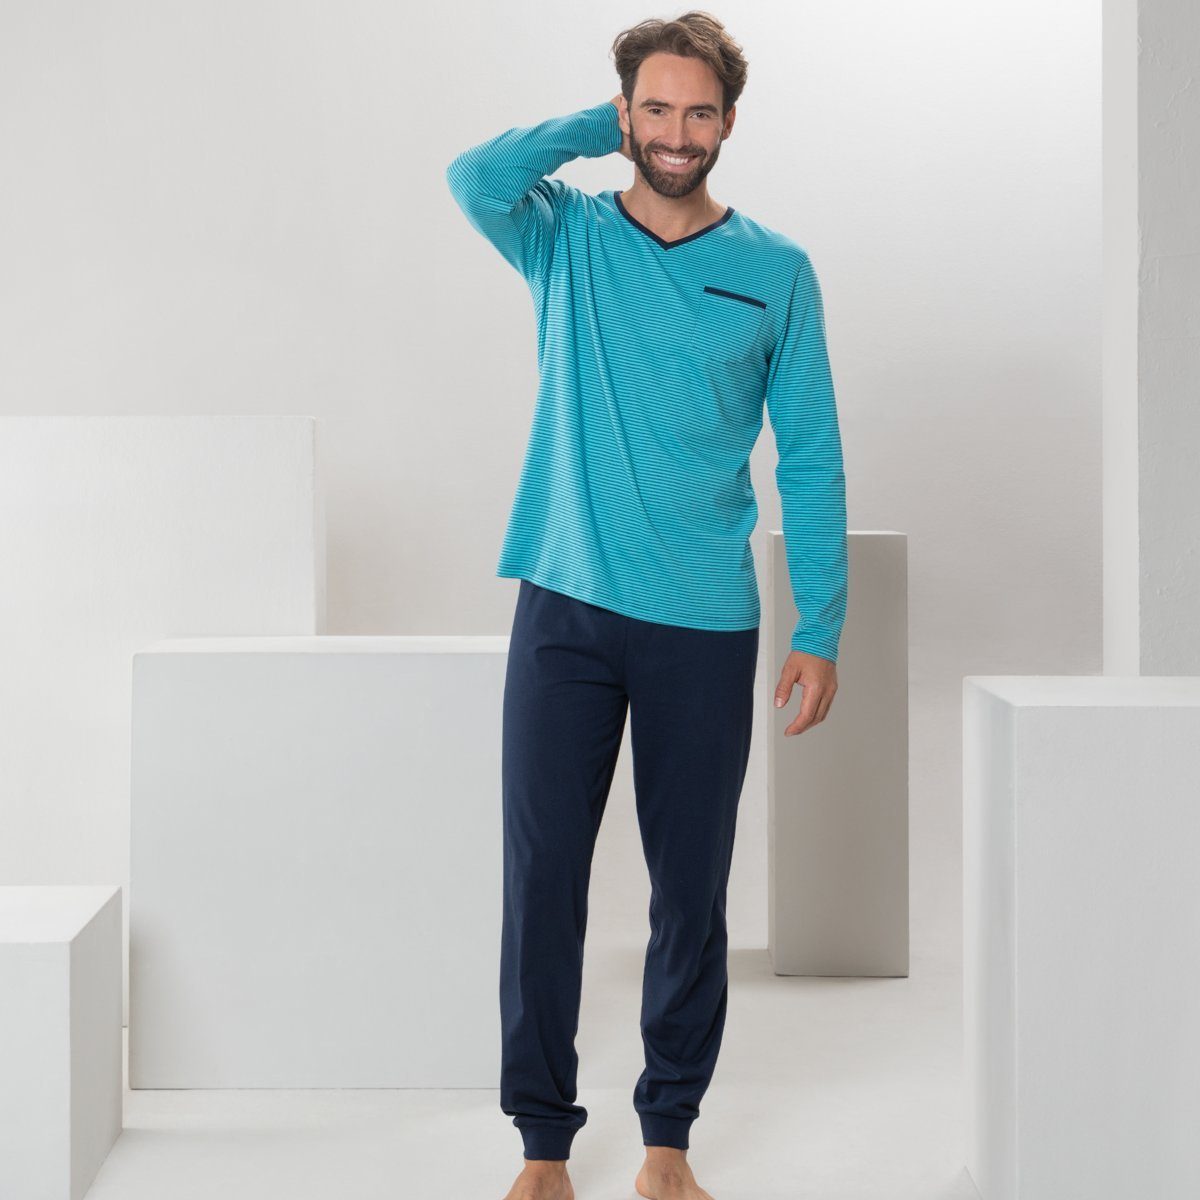 LIVING CRAFTS Schlafanzug COLIN Sommerliche Leichtigkeit in abgestimmten Farbtönen Turquoise